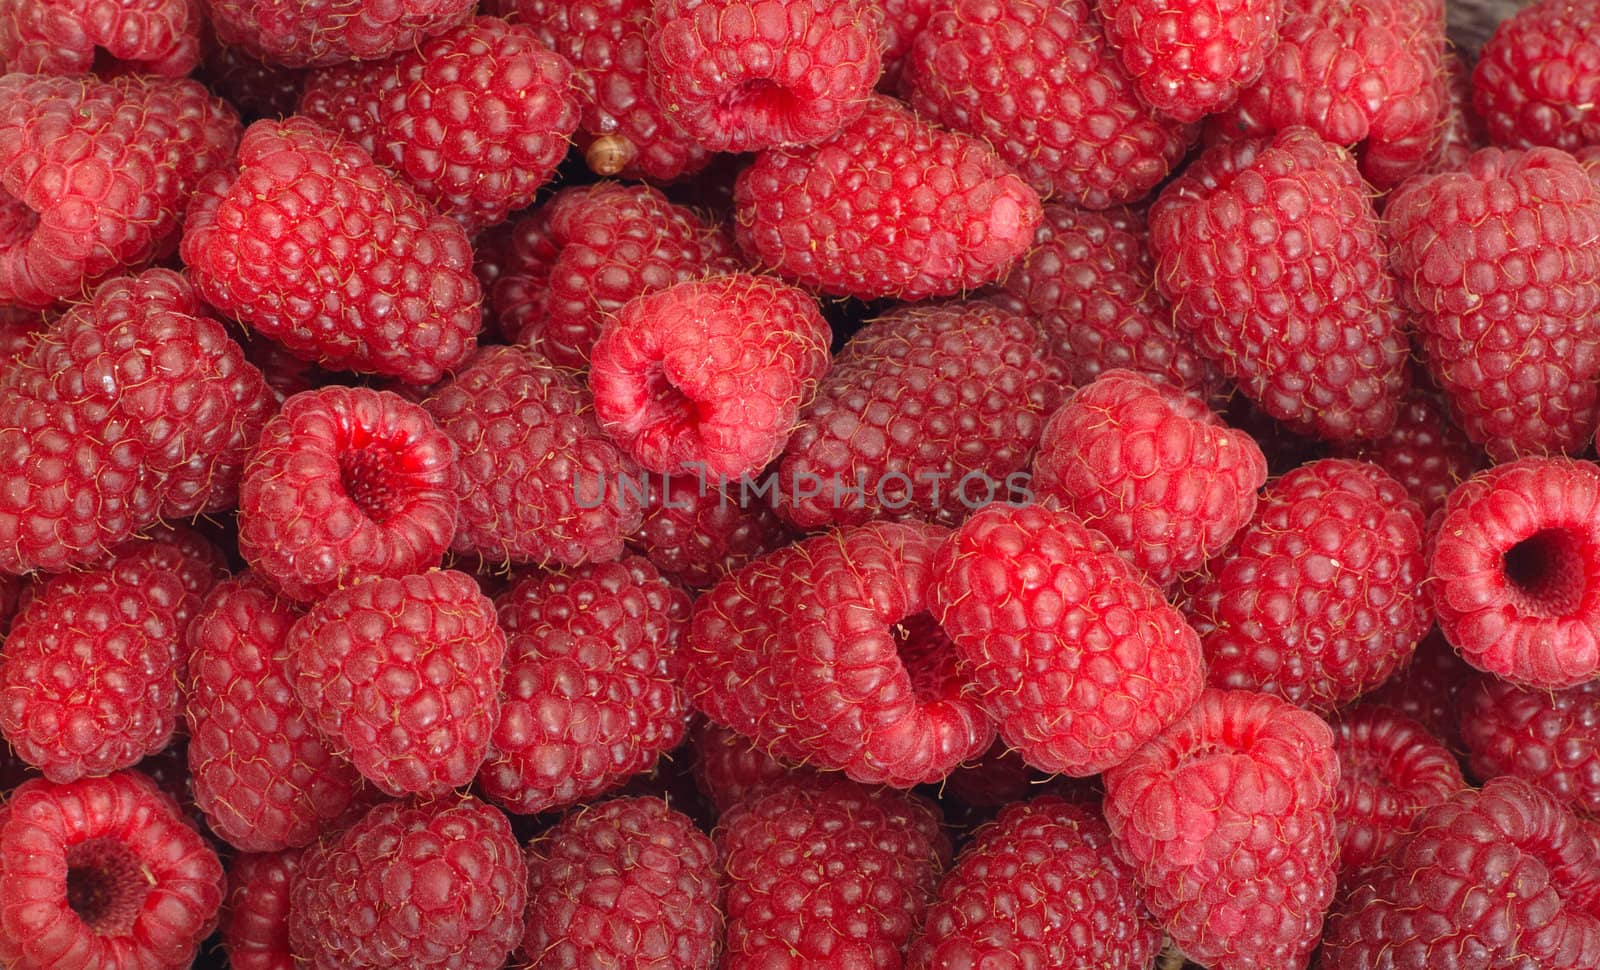 Raspberries by aguirre_mar